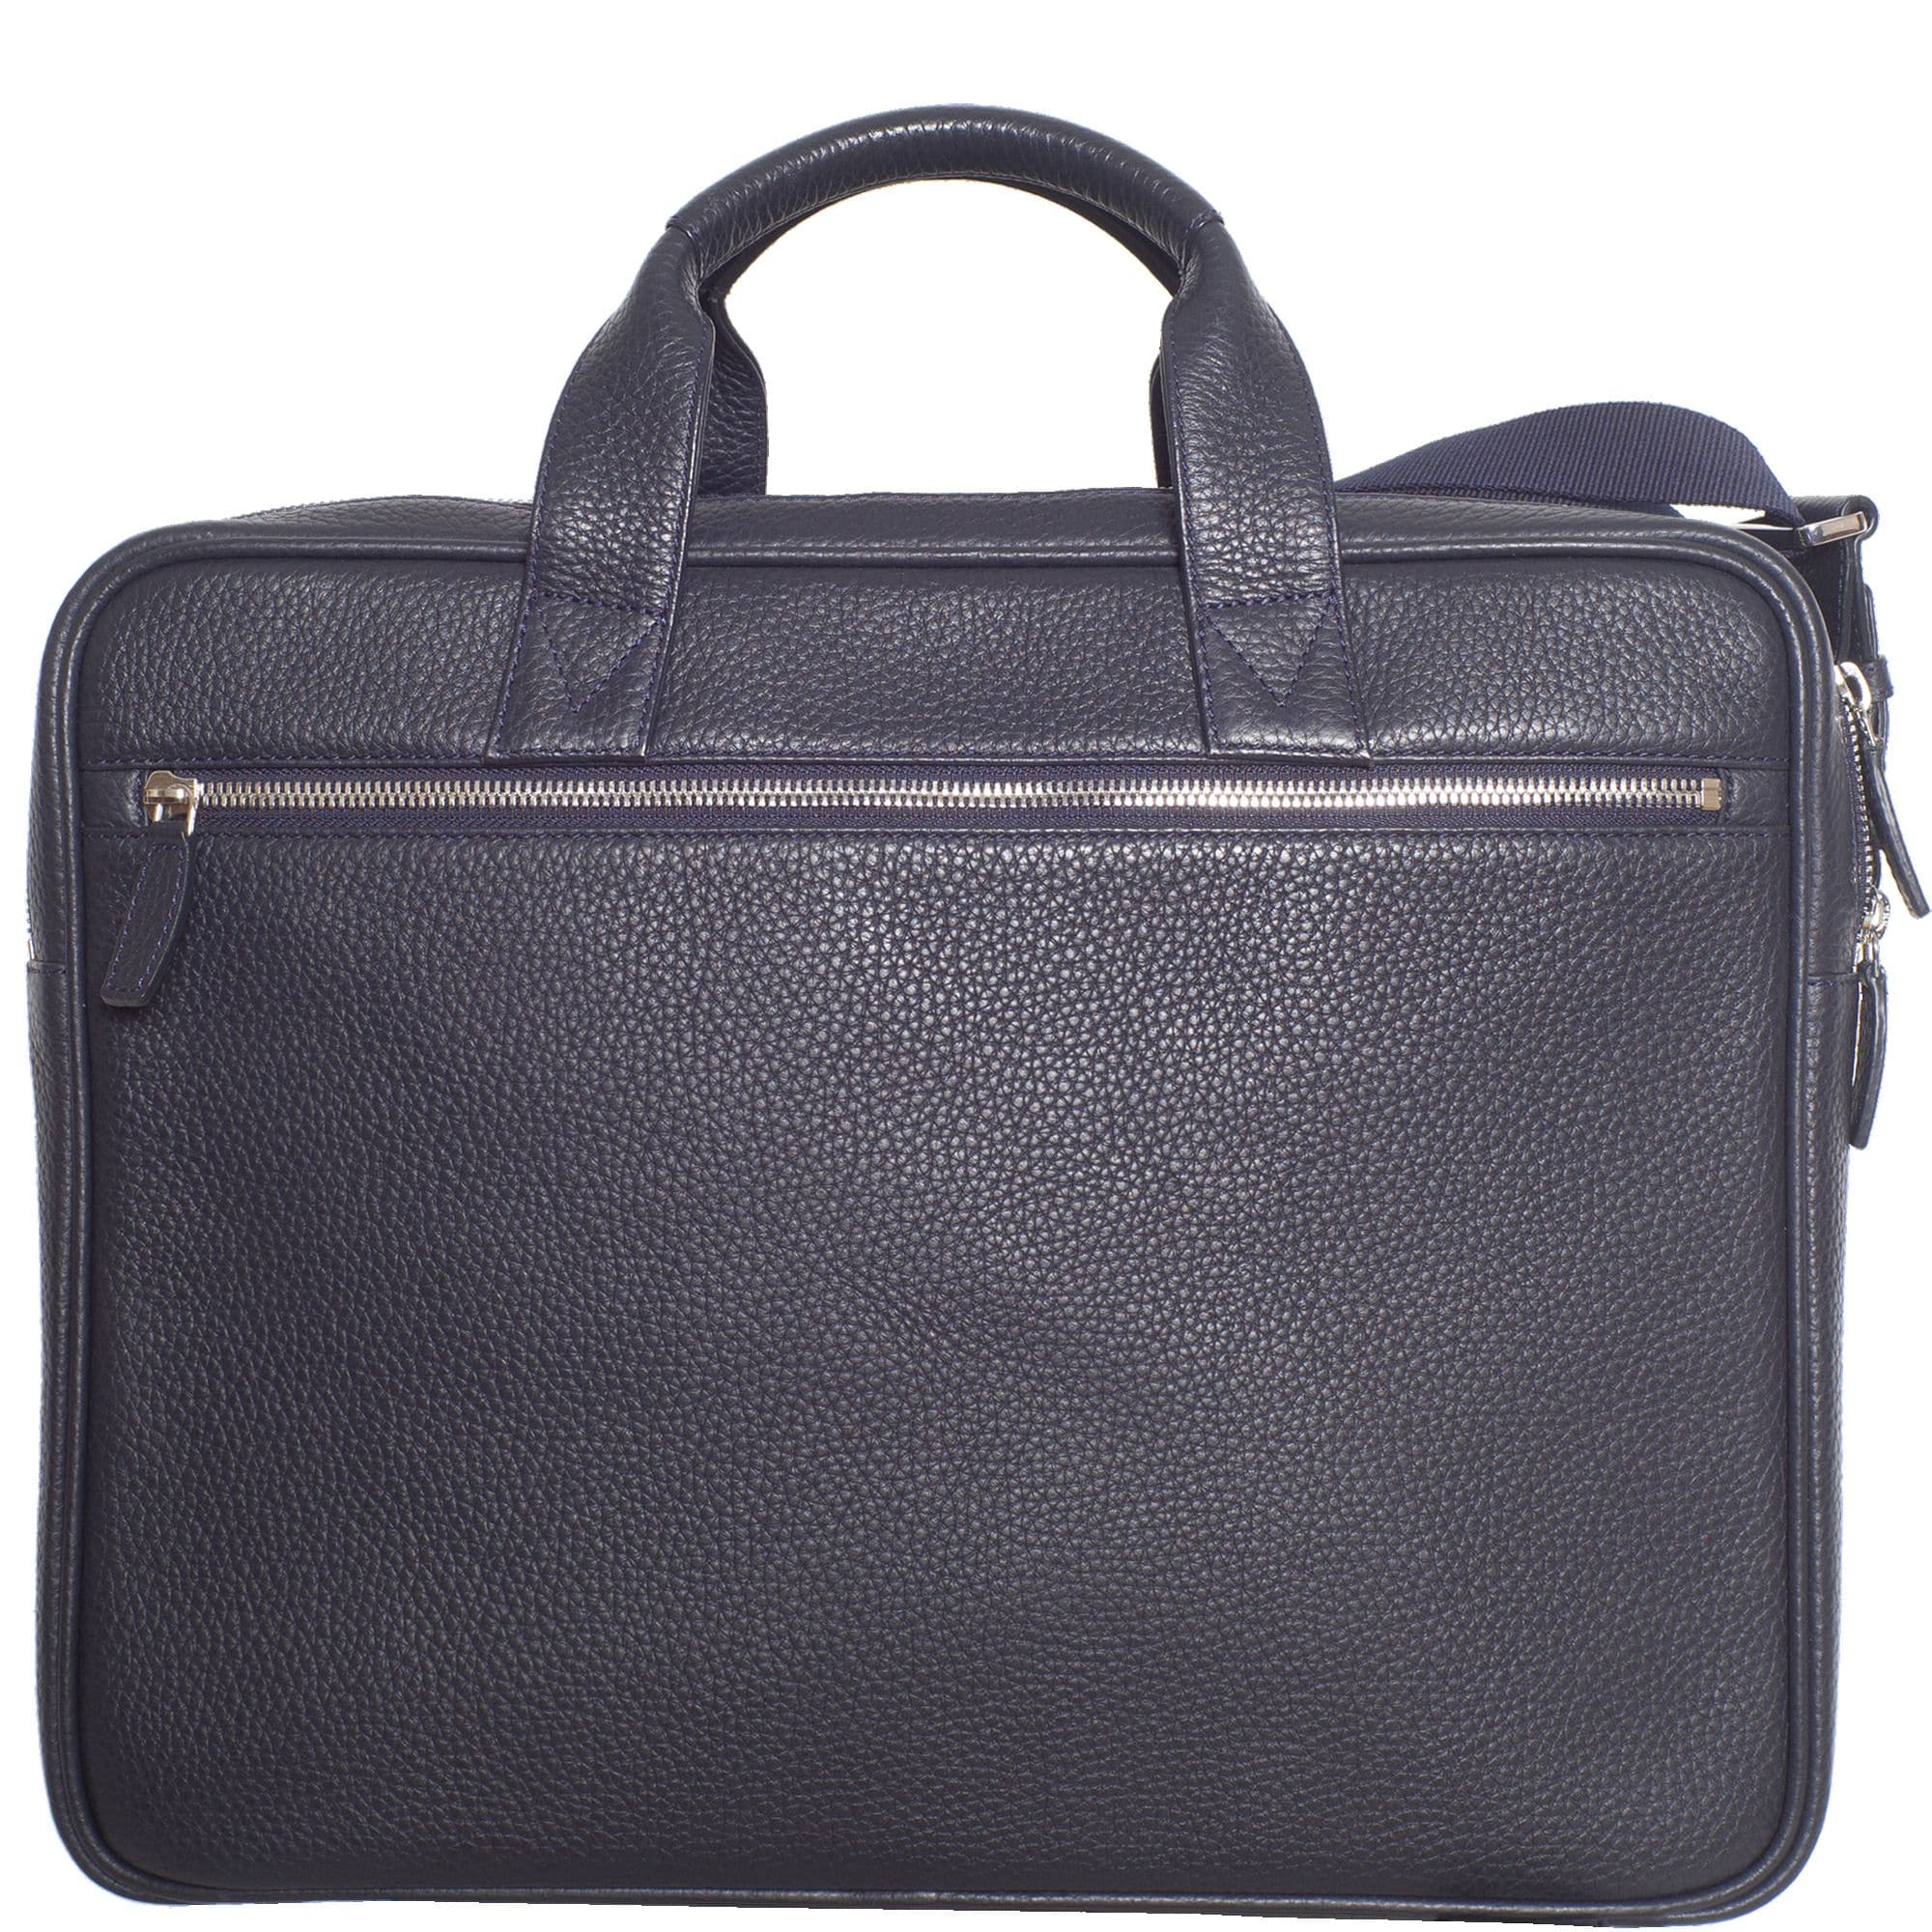 Businesstasche Laptoptasche 15 Zoll leicht genarbtes Leder blau 2 große Fächer